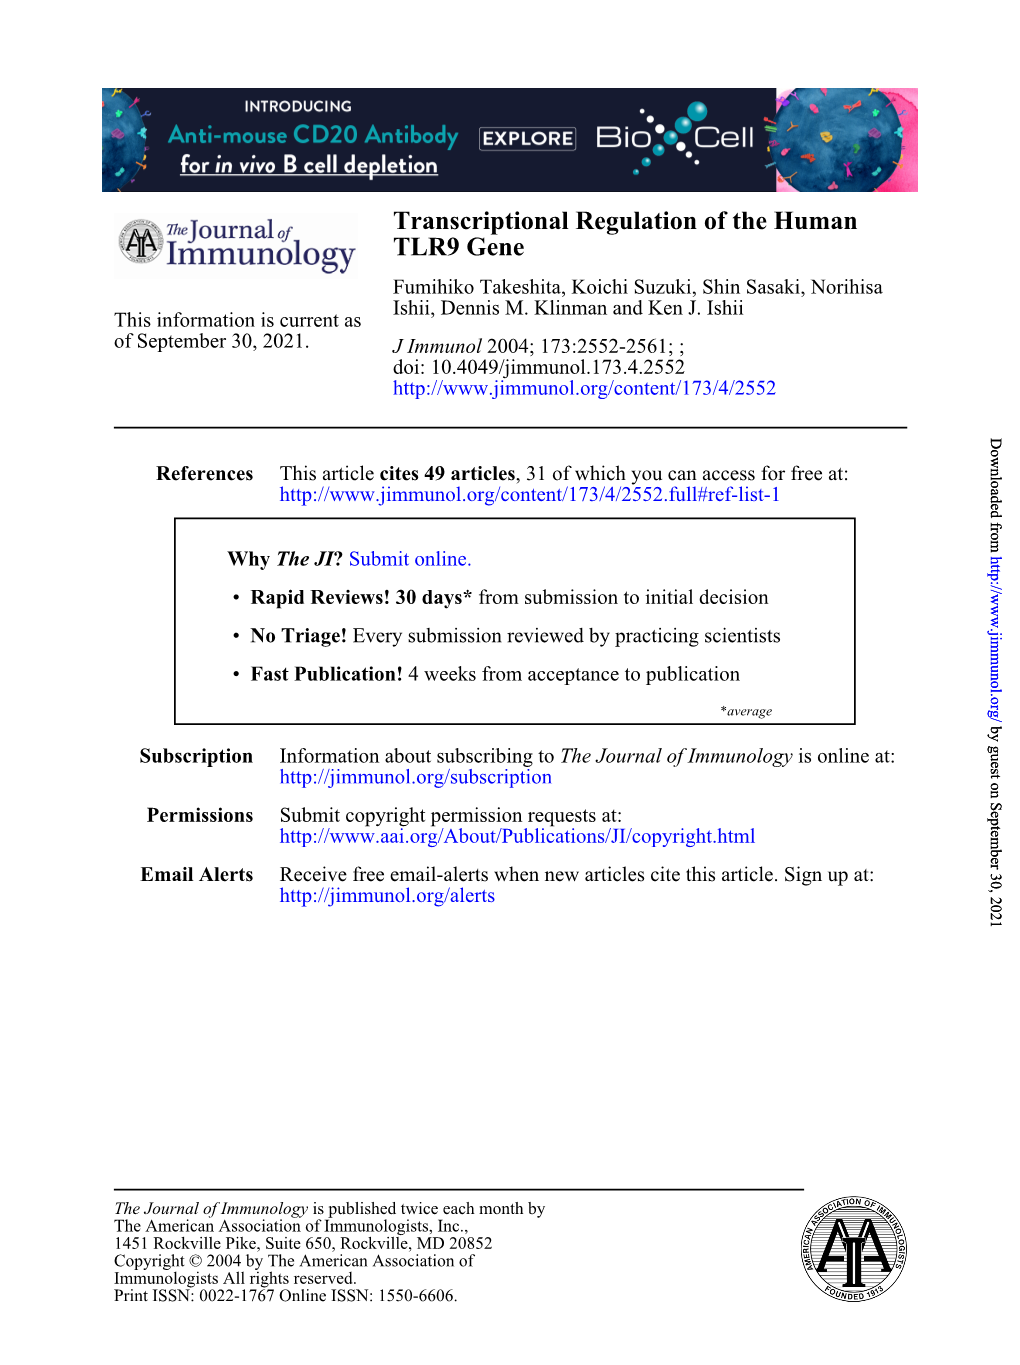 TLR9 Gene Transcriptional Regulation of the Human